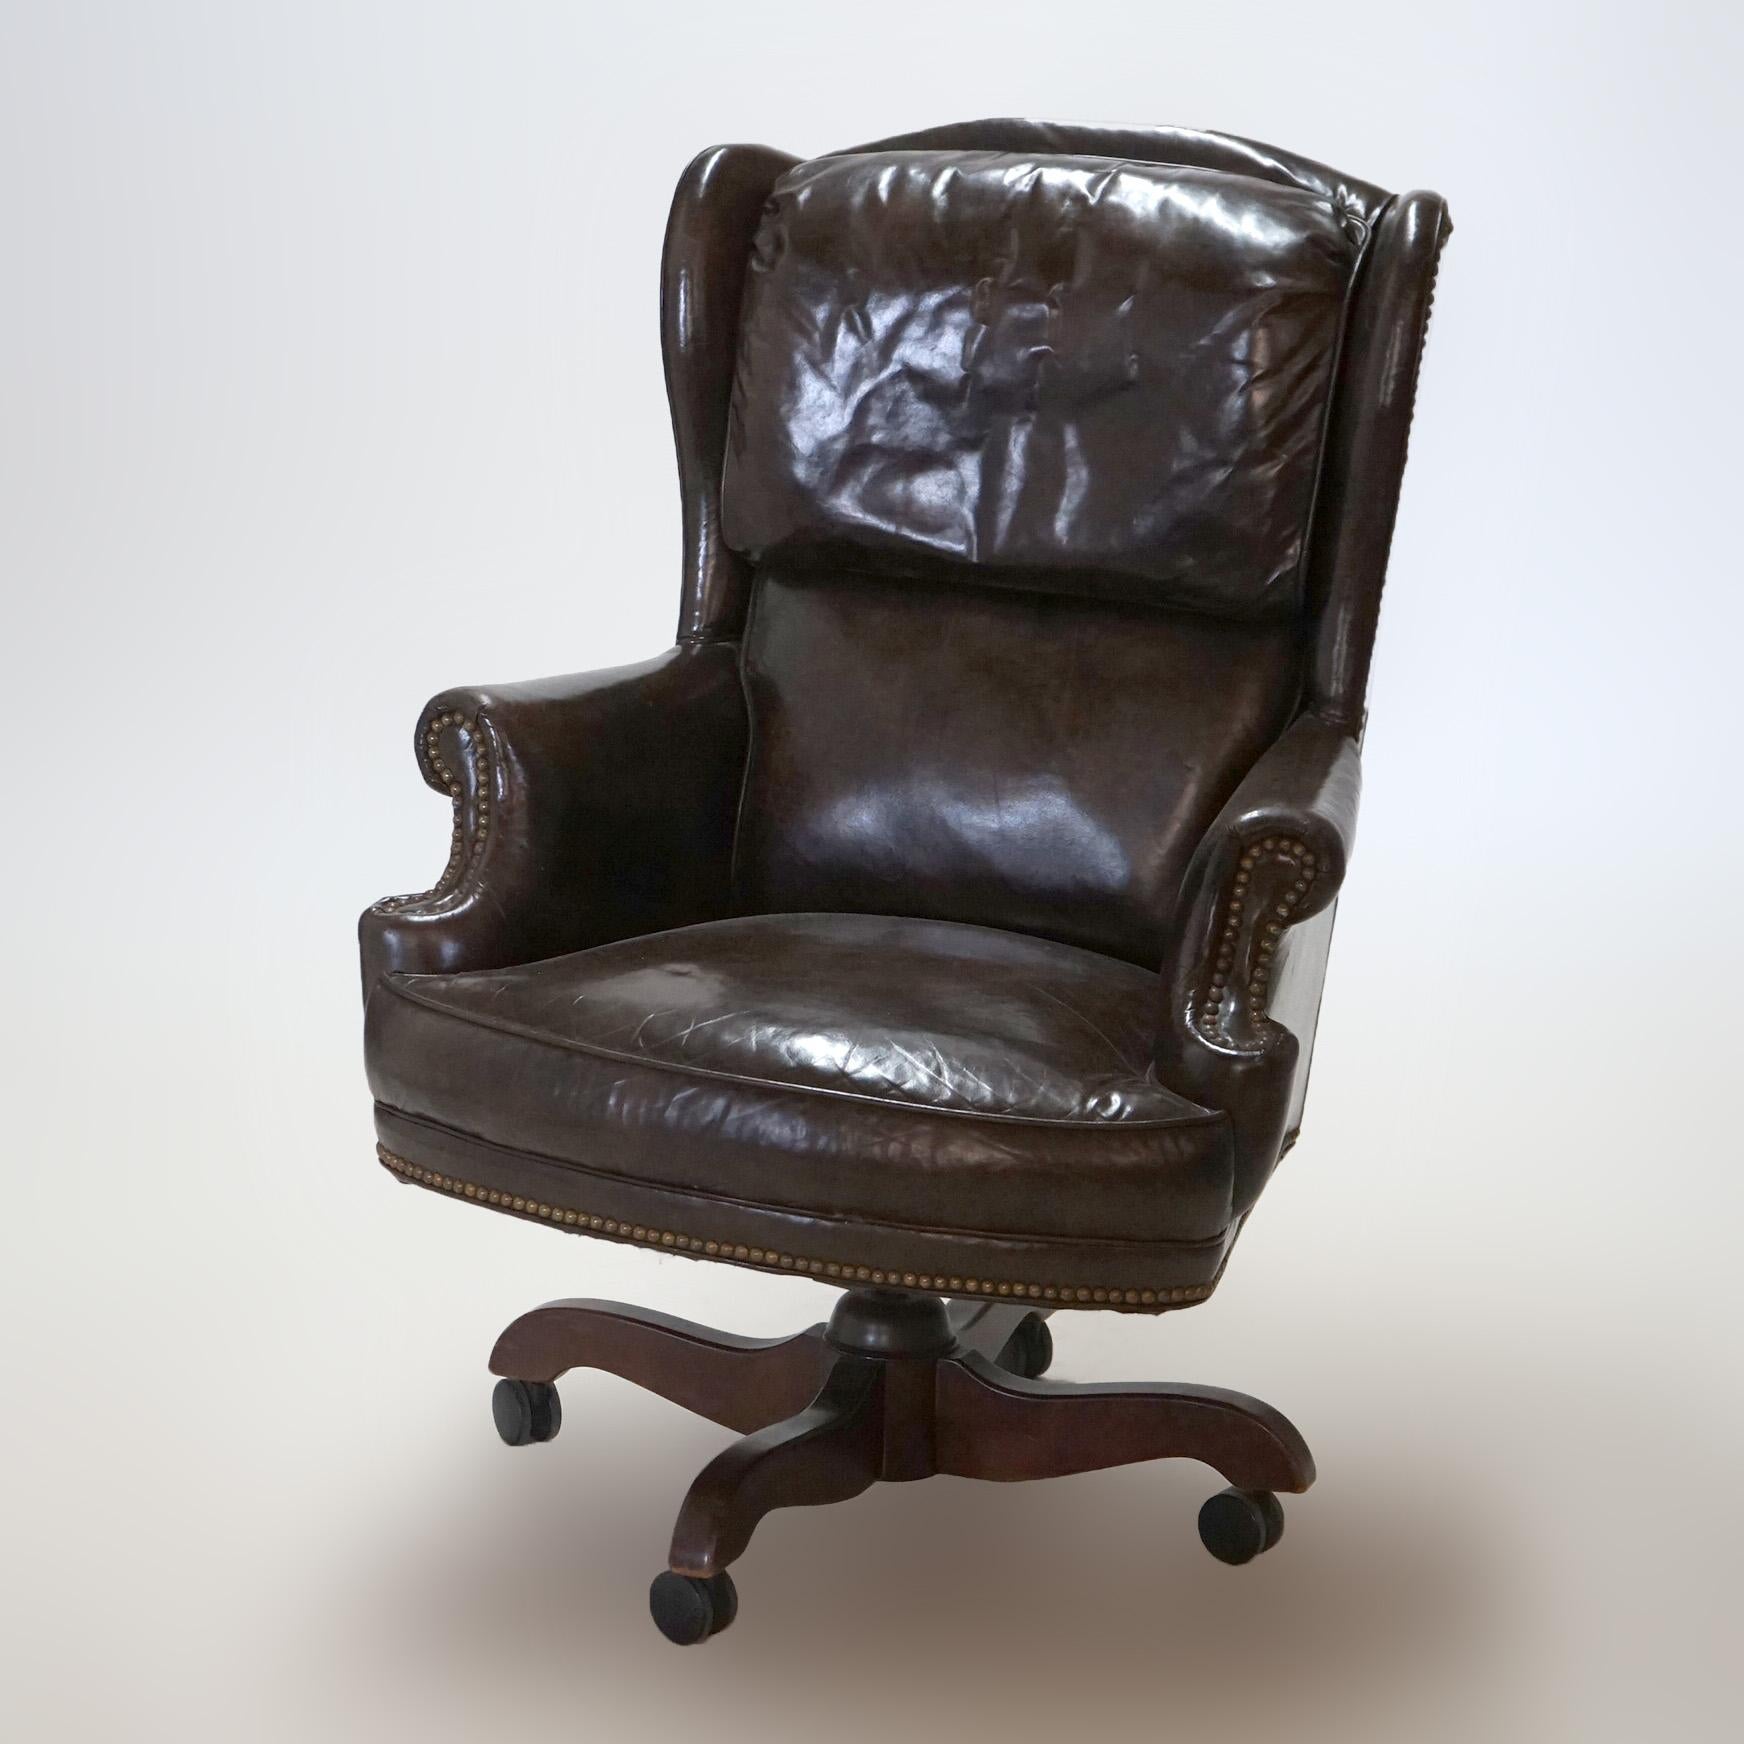 Executive Office Swivel Desk Chair, Faux Leather, 20th C

Dimensions : 44,5''H x 30,5''L x 33,25''P

Note sur le catalogue : Demandez les TARIFS DE LIVRAISON RÉDUITS disponibles pour la plupart des régions situées dans un rayon de 1 500 miles